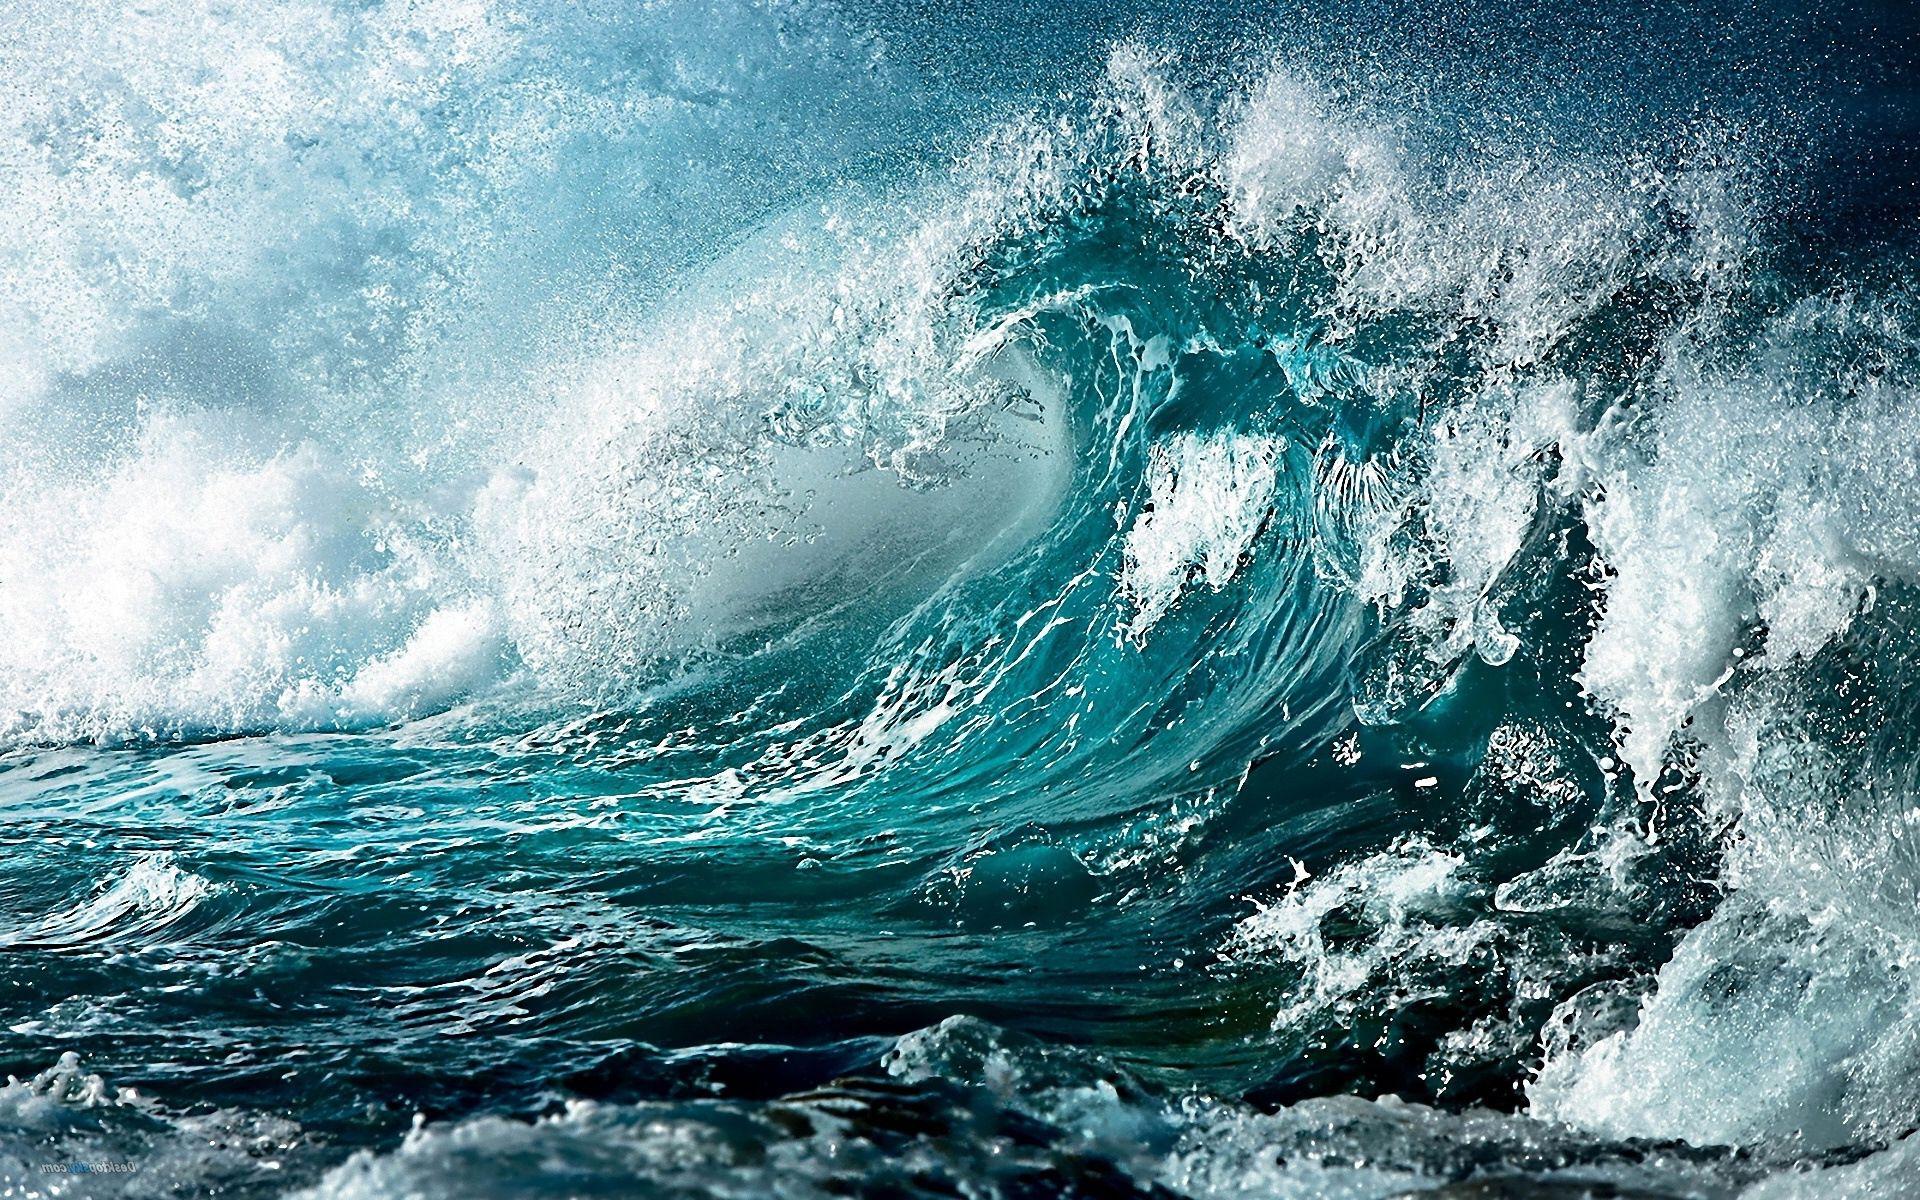 Big blue waves Wallpaper. Picture. Tempest Media Design. Waves